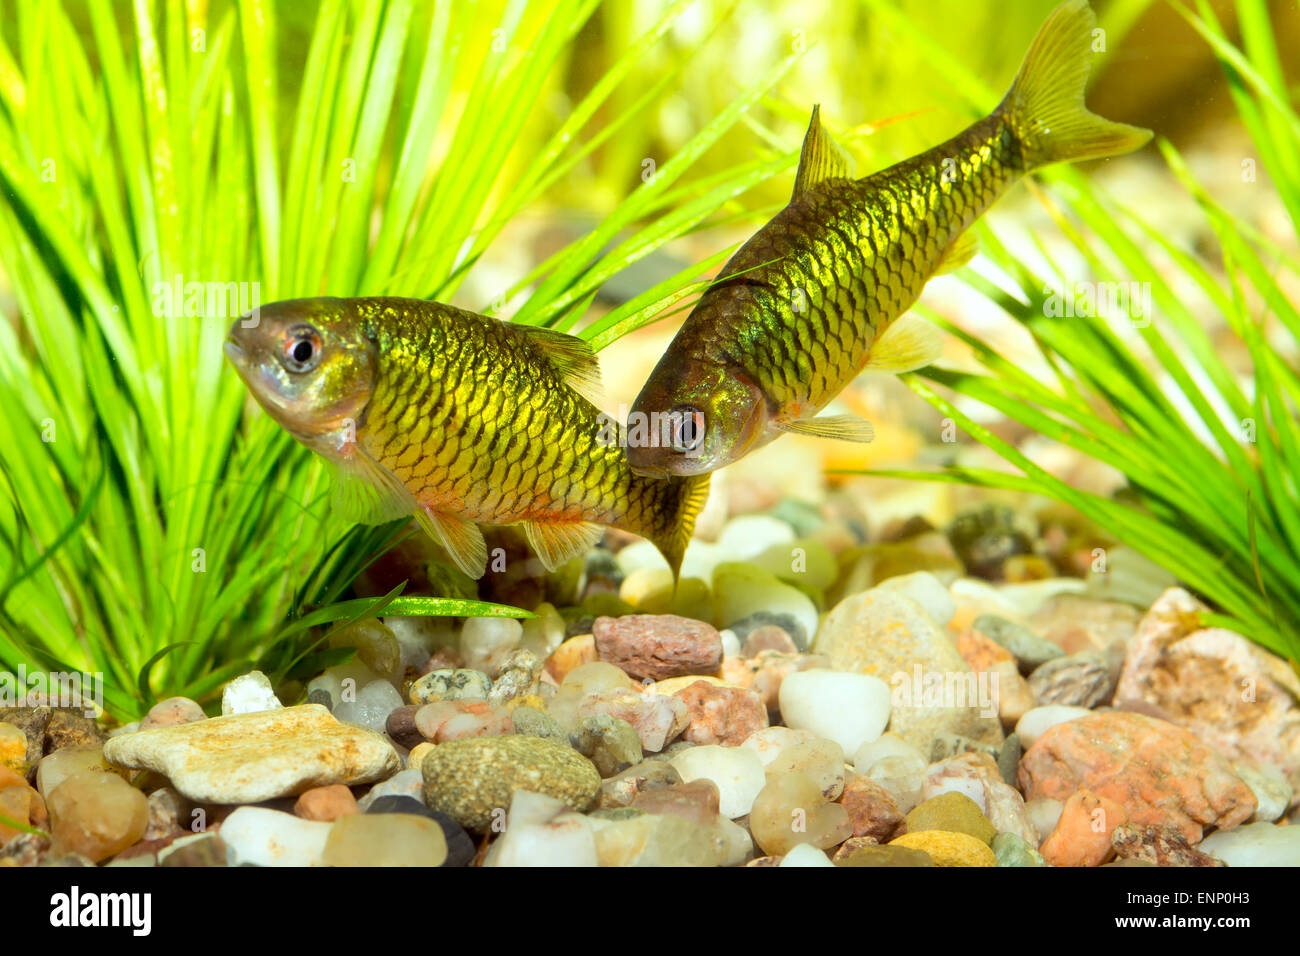 Nice aquarium barb fishes from genus Puntius. Stock Photo